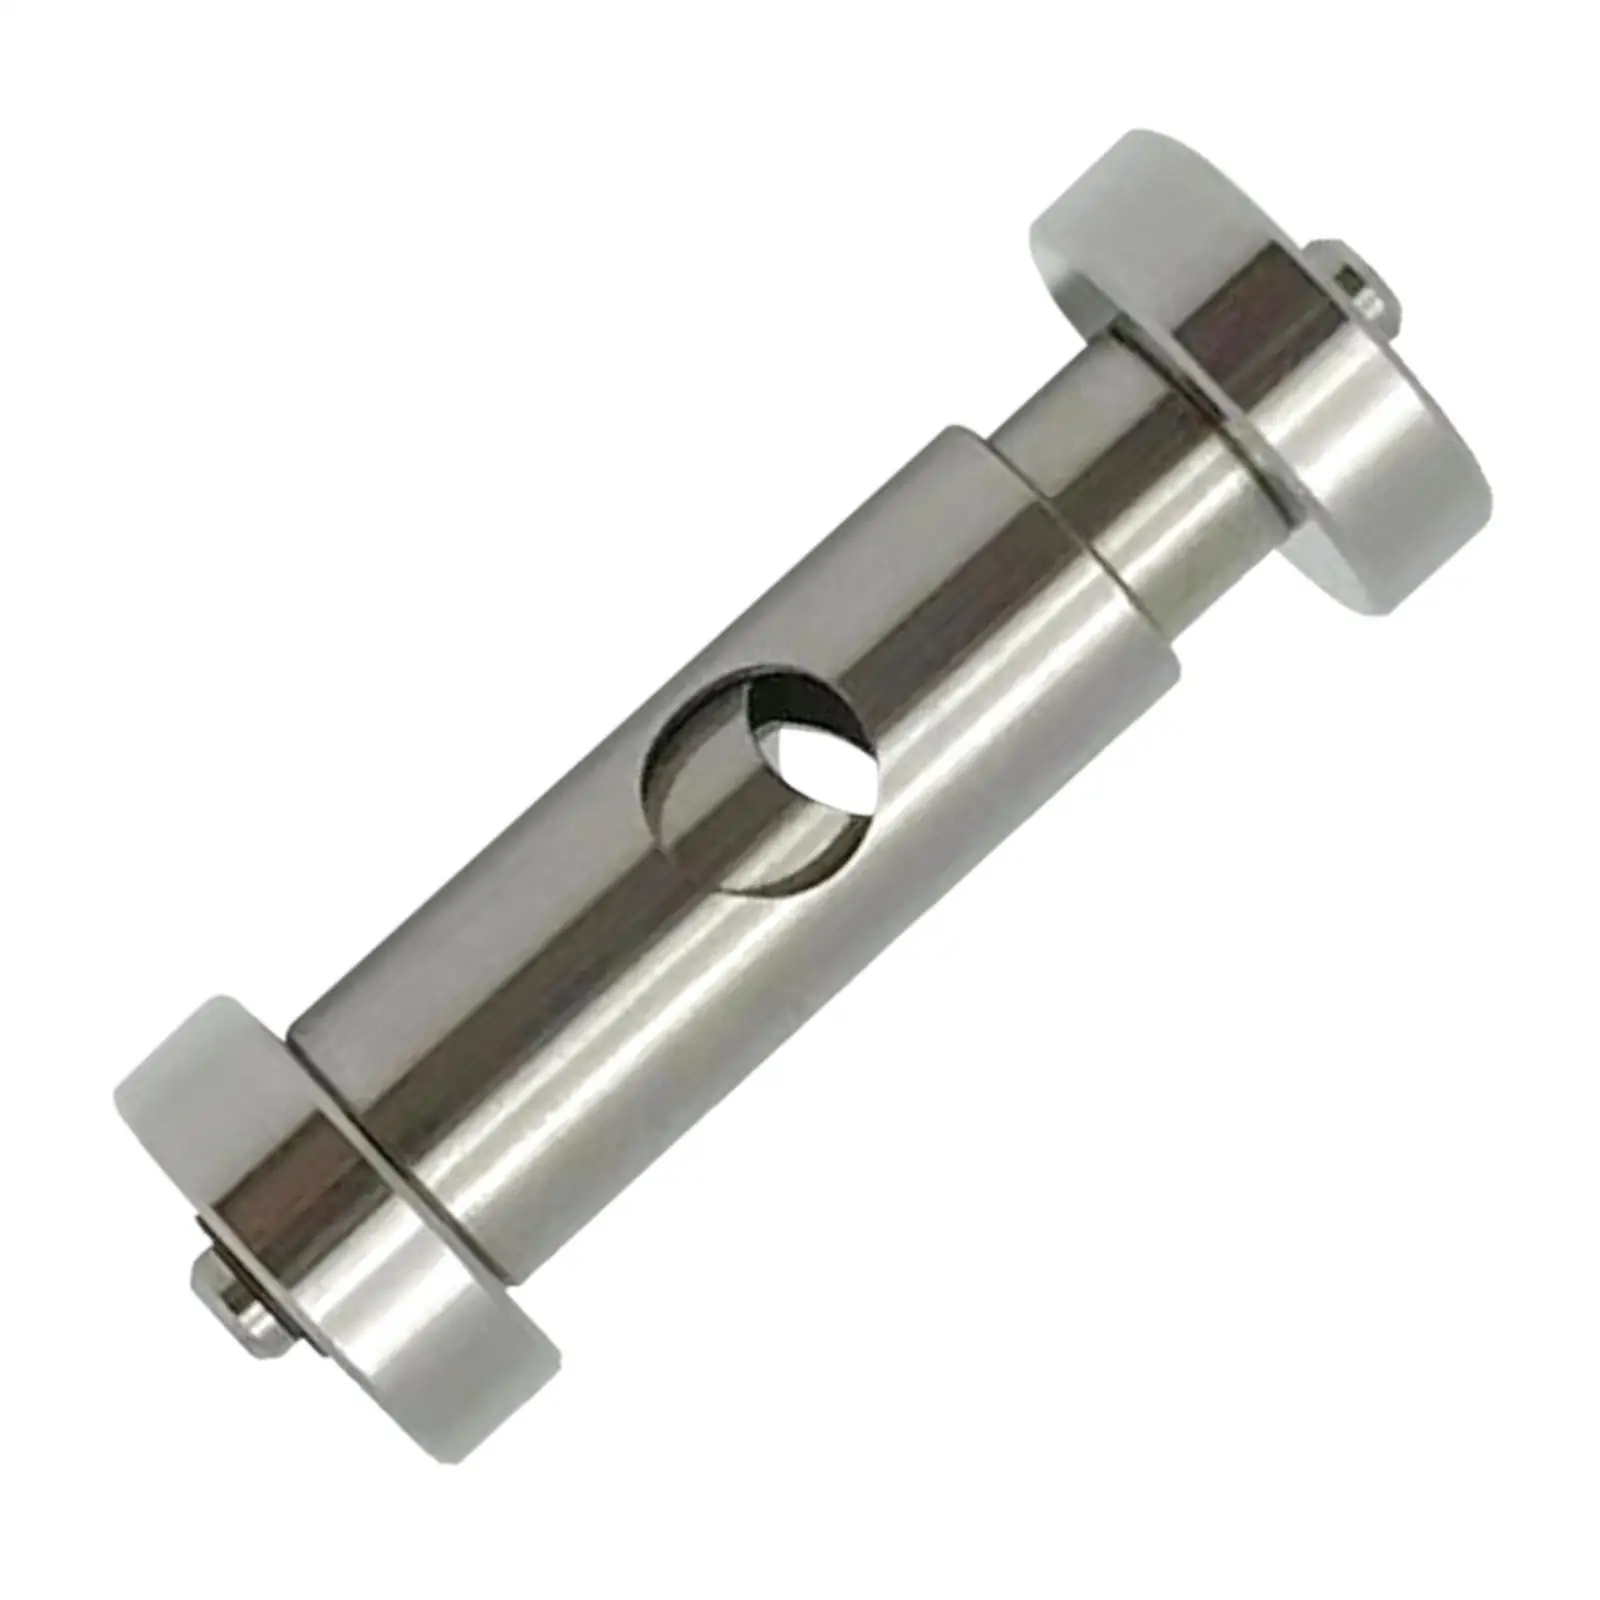 Sharpening Holder Watch Tool Grinder Angle Grinder Holder Sturdy Adjustable Sharpener Steel Durable Screwdriver Sharpening Guide